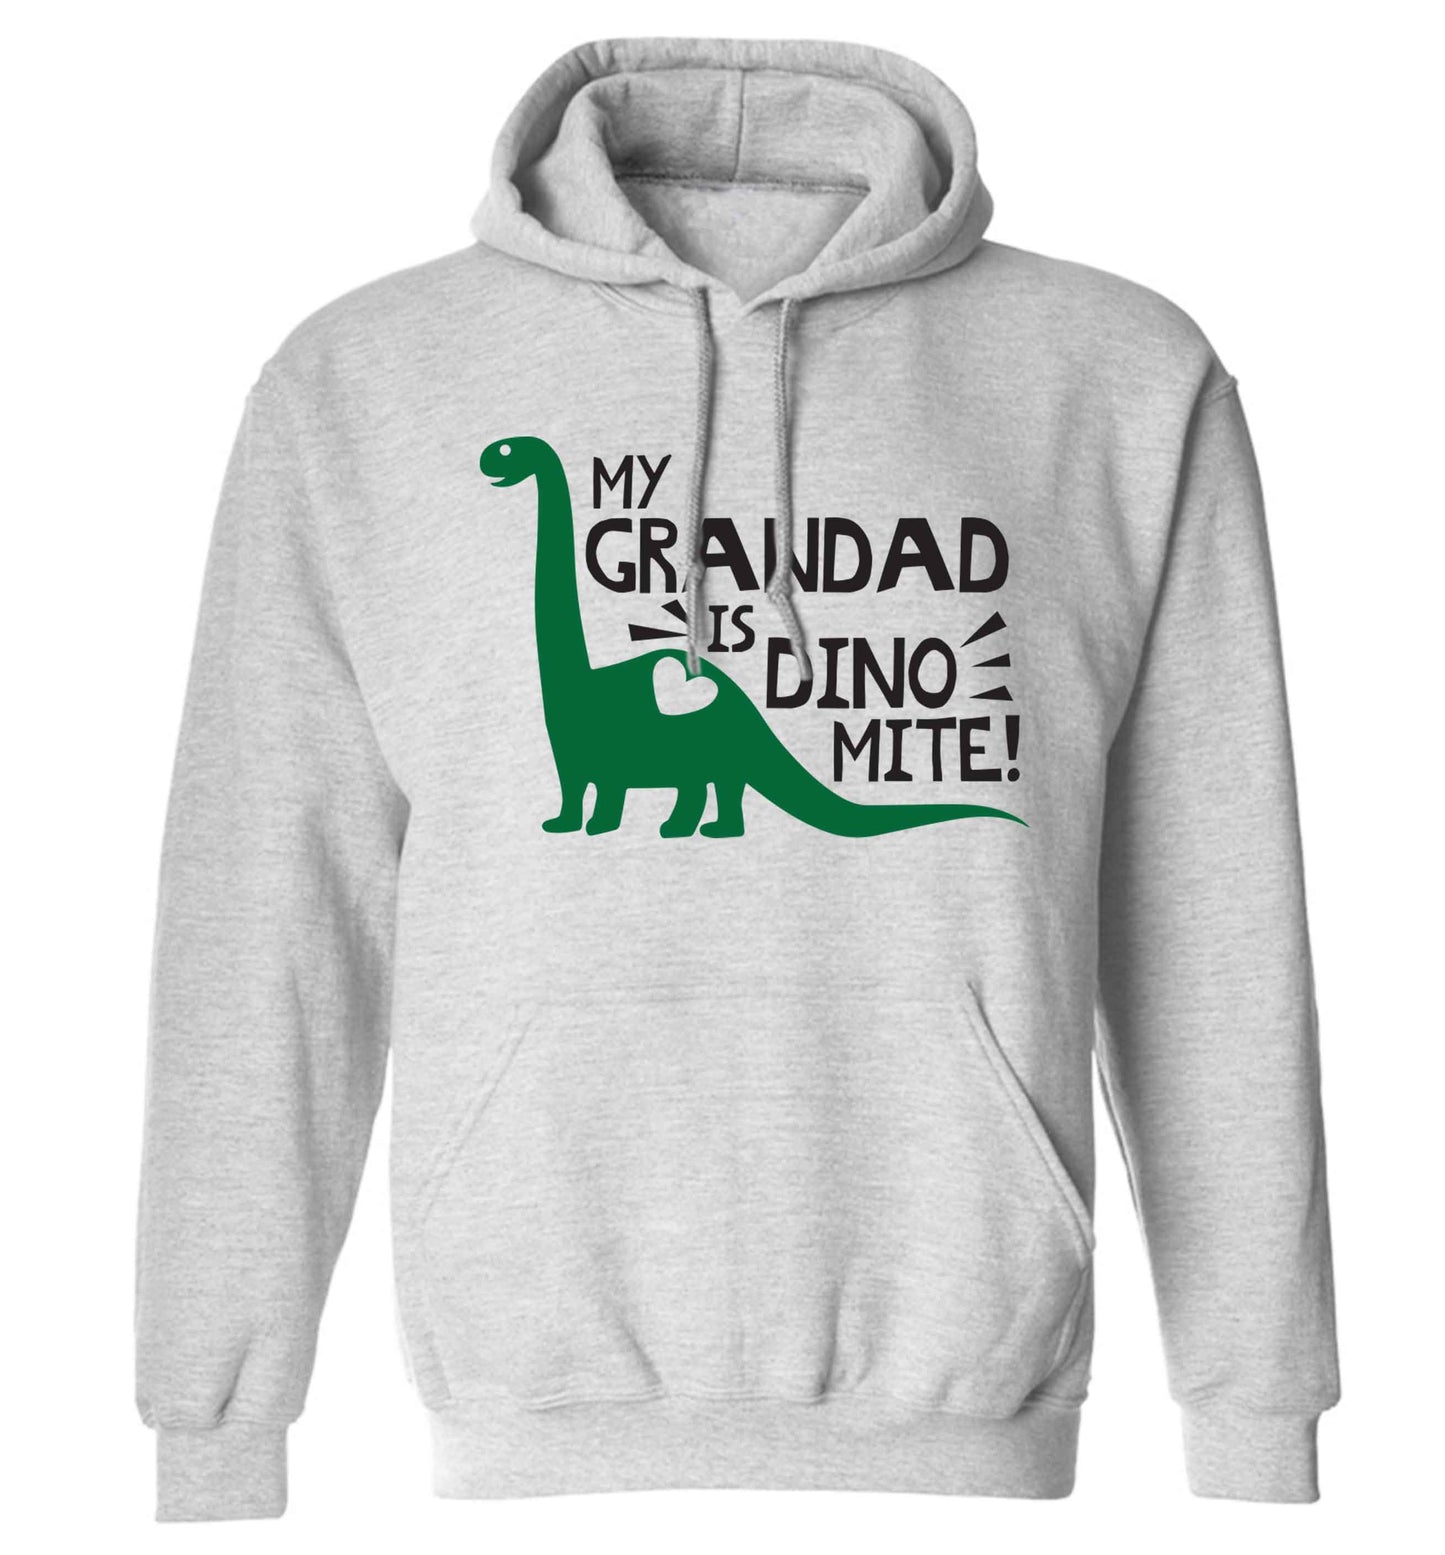 My grandad is dinomite! adults unisex grey hoodie 2XL